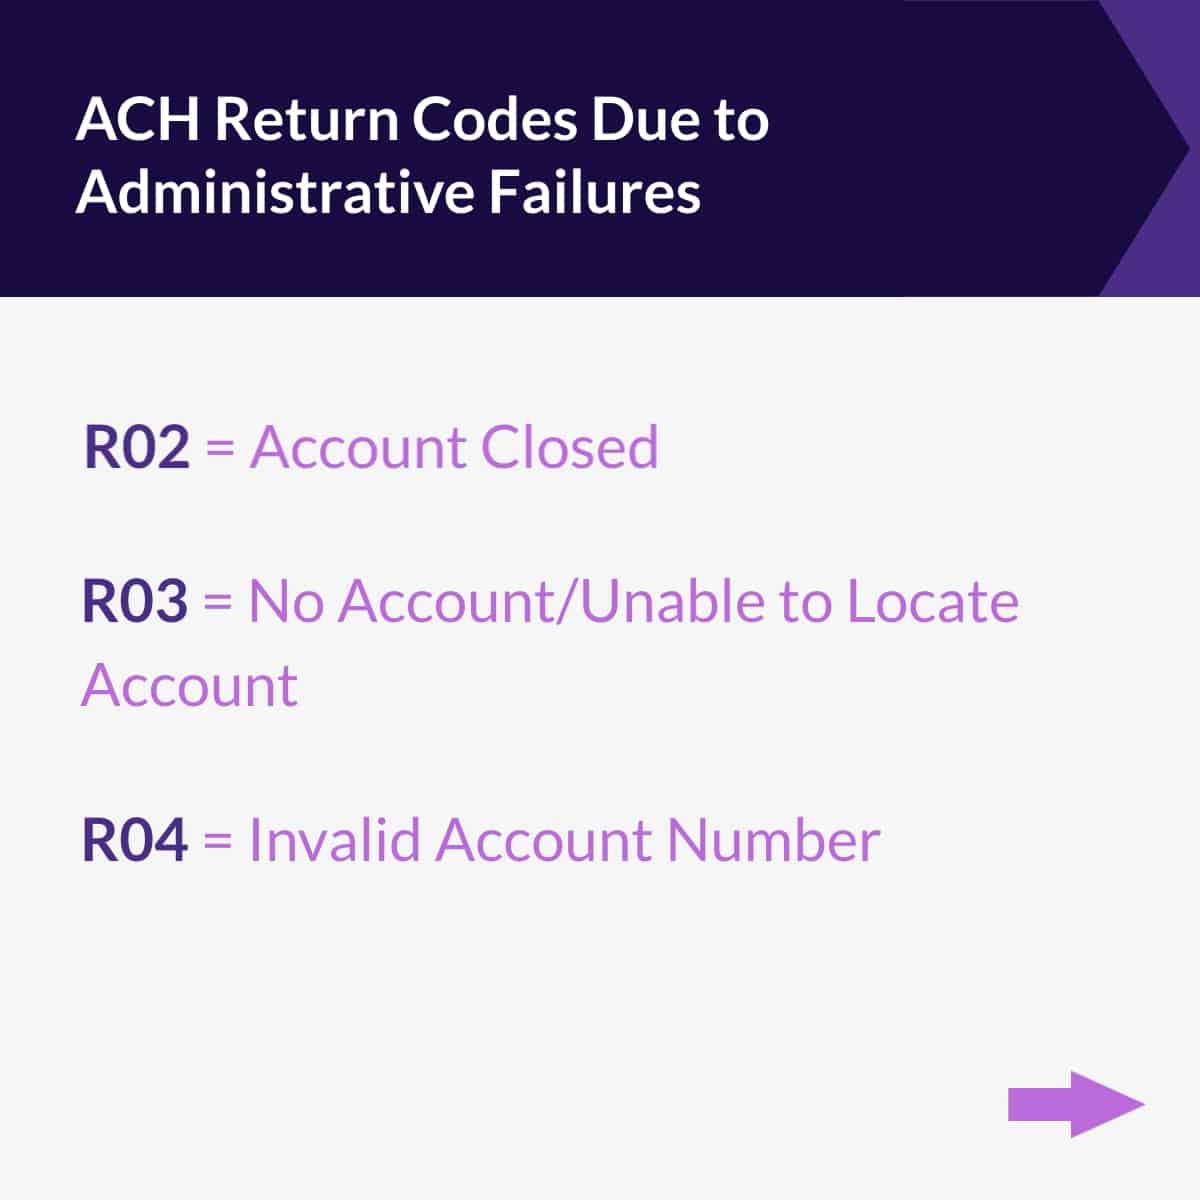 ACH Return Codes Due to Administrative Failures